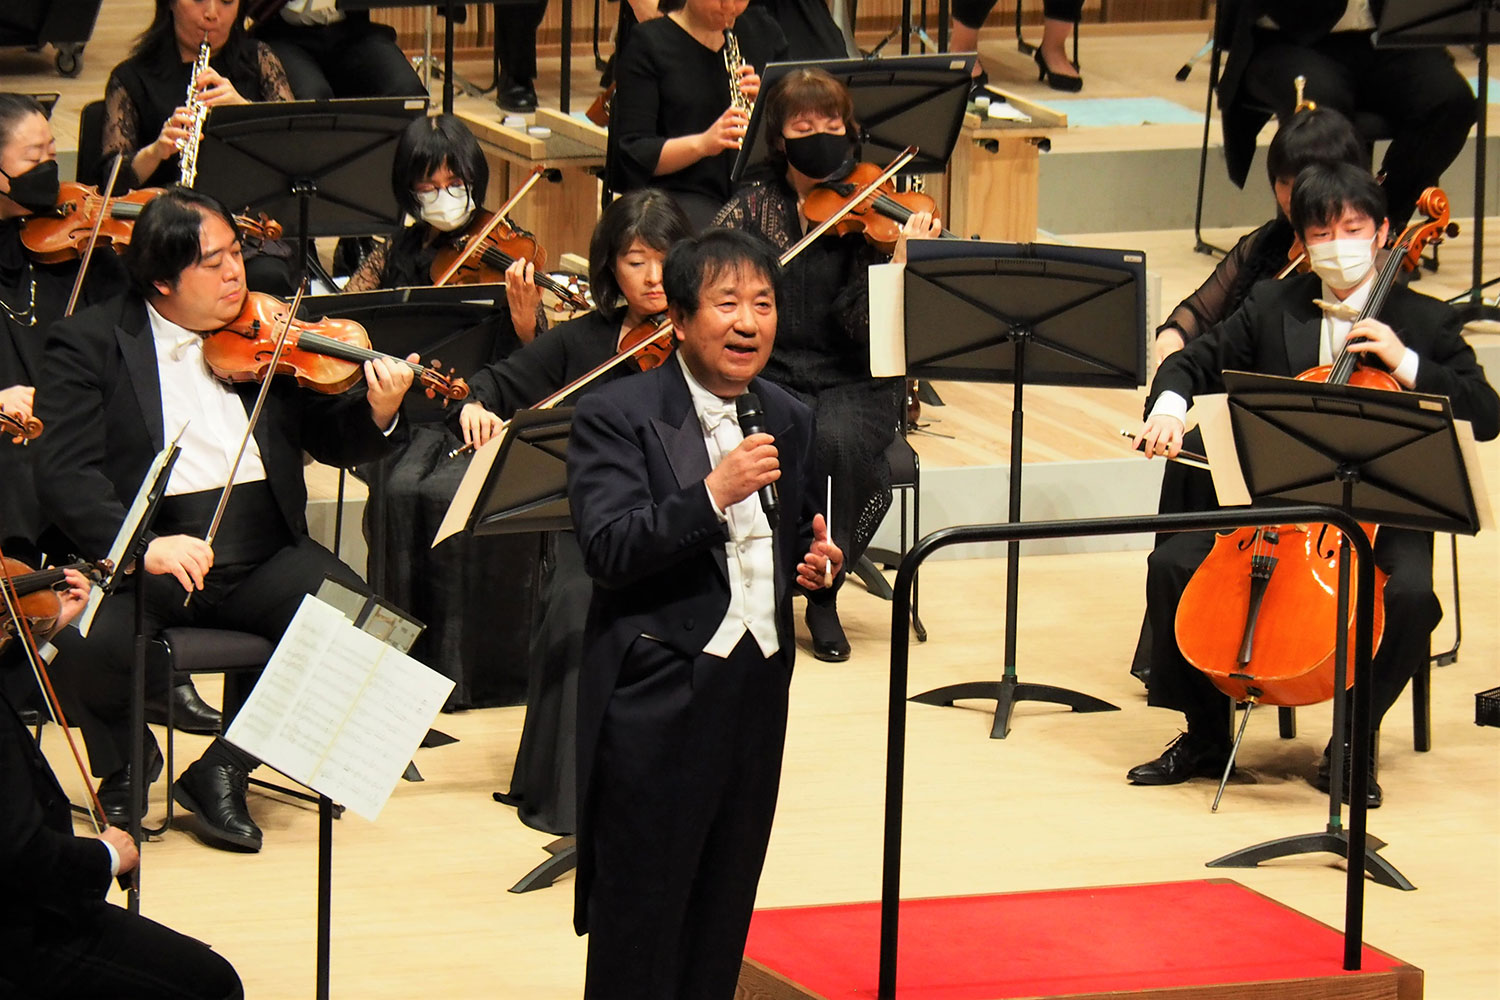 指揮者の大沢さんはユーモアあるトークで観客を喜ばせた。時には歌声も響かせた